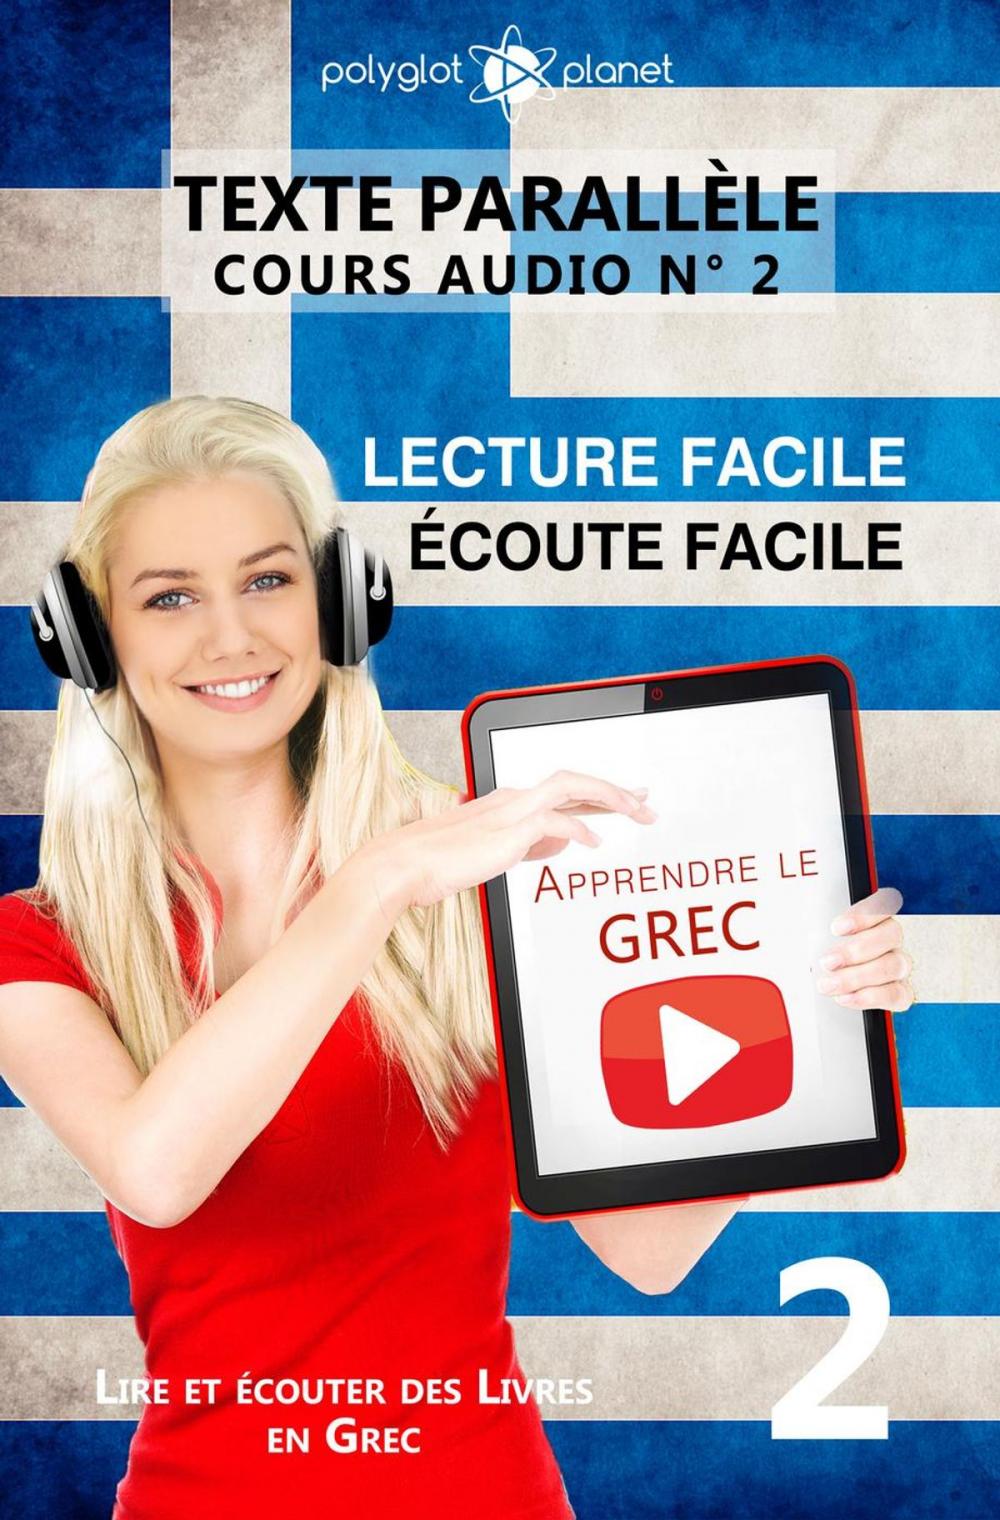 Big bigCover of Apprendre le grec | Écoute facile | Lecture facile | Texte parallèle COURS AUDIO N° 2